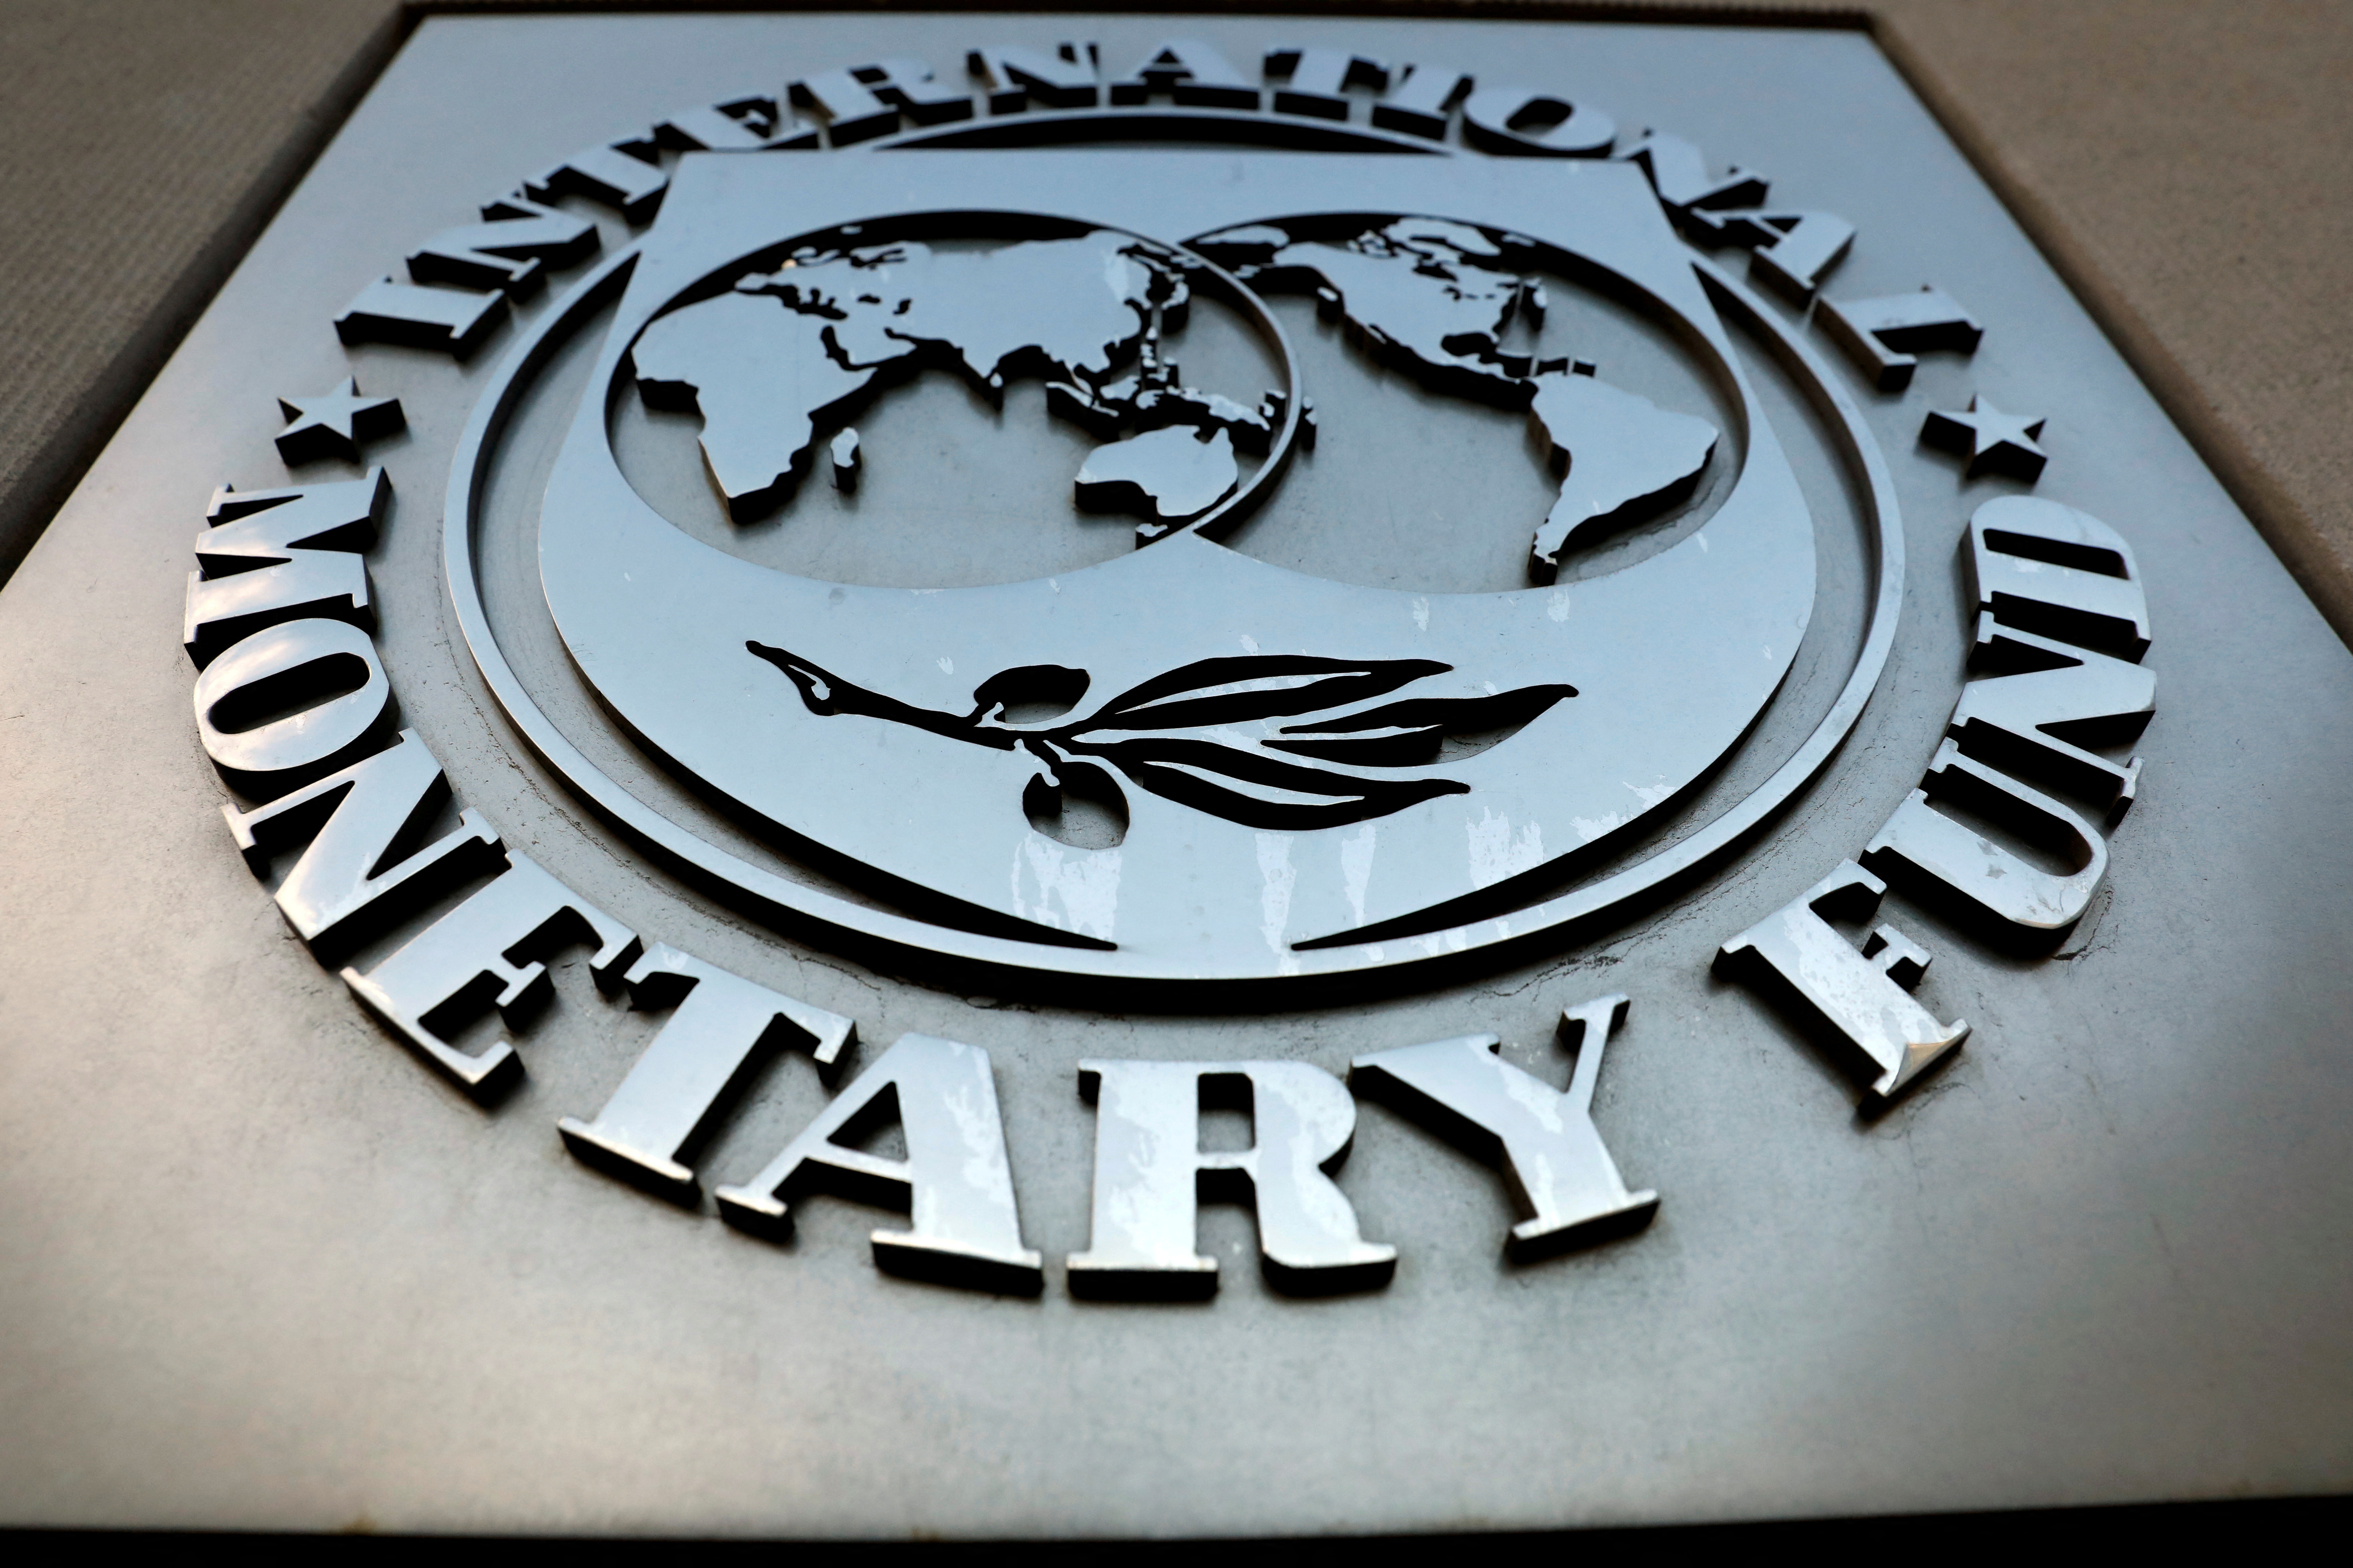 Мировой валютный фонд. Международный валютный фонд. МВФ Вашингтон. Международный валютный фонд (МВФ). Герб международного валютного фонда.